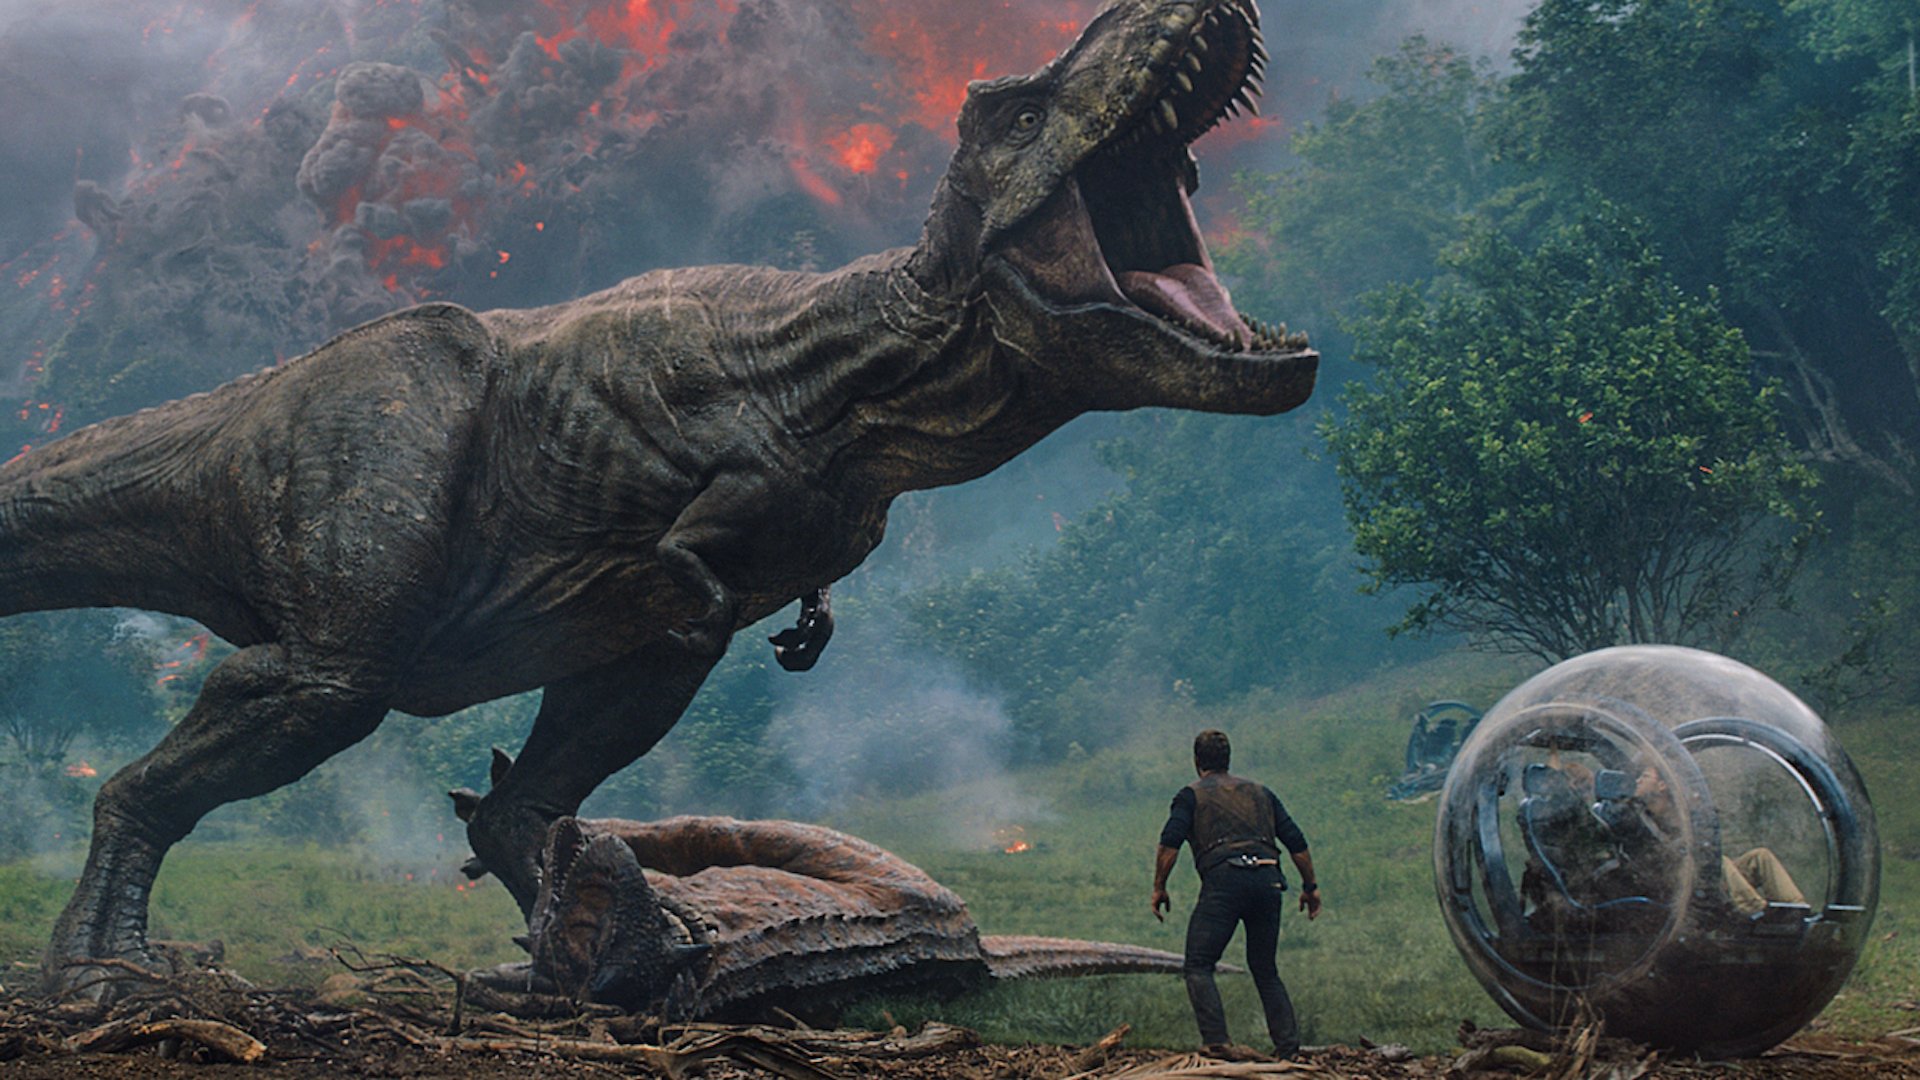 A T-Rex roars over a dead Ankylosaurus and a man standing beside an orb car.